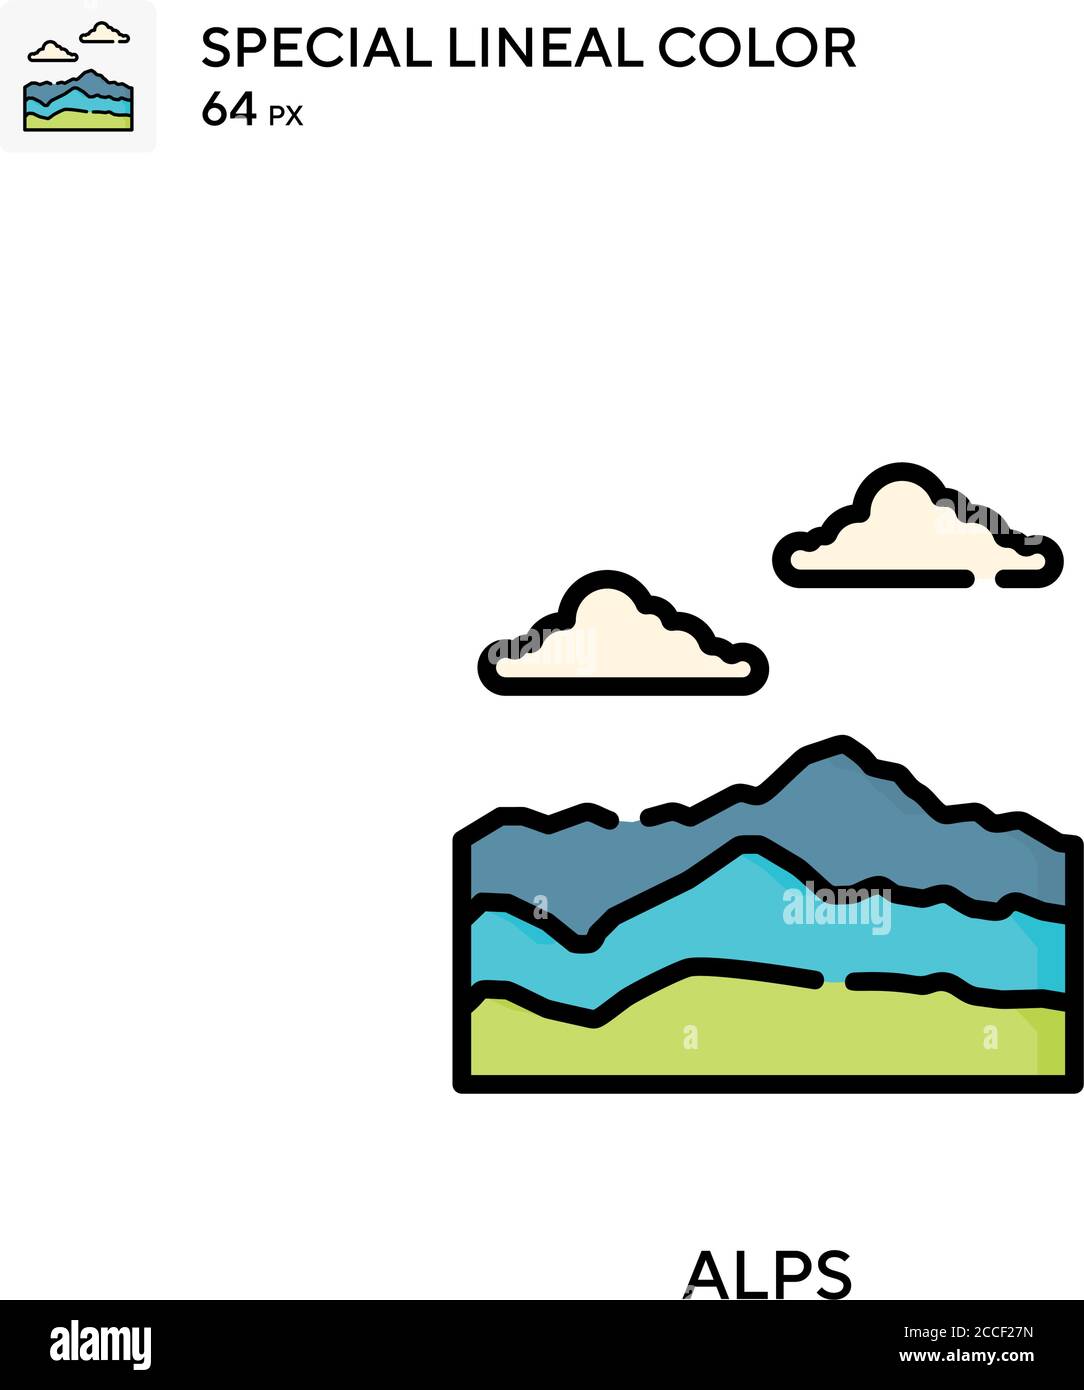 Alps icône de couleur spéciale. Modèle de conception de symbole d'illustration pour élément d'interface utilisateur Web mobile. Illustration de Vecteur